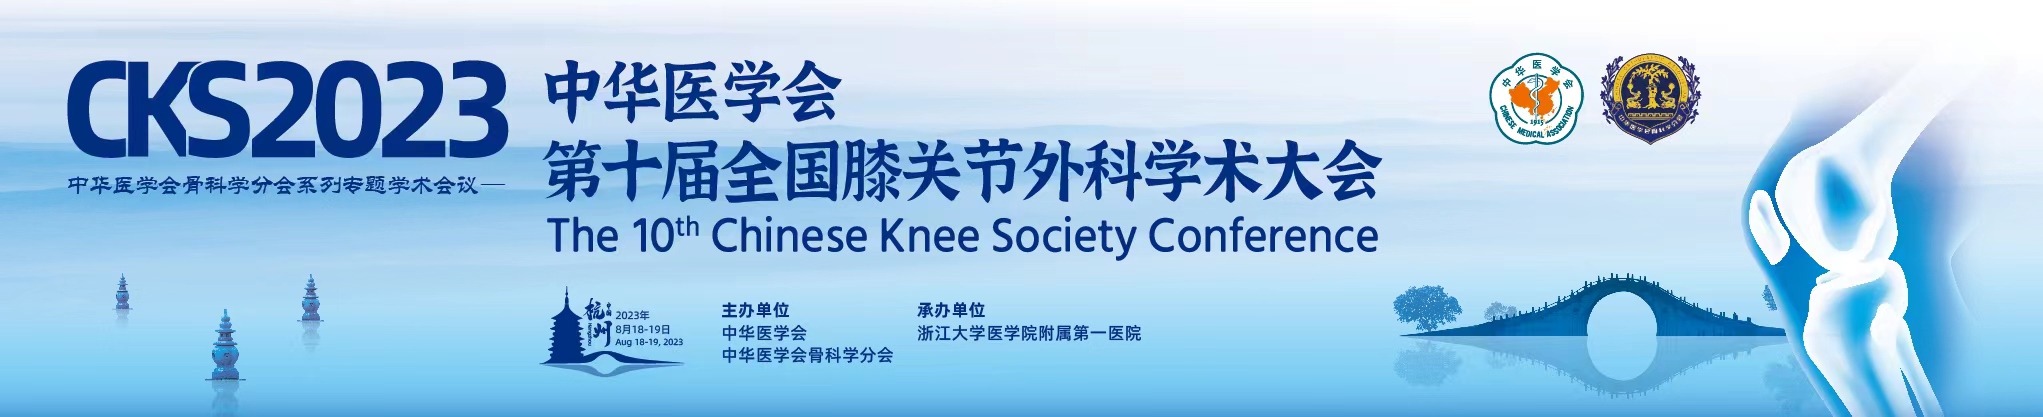 中华医学会第十届全国膝关节外科学术大会